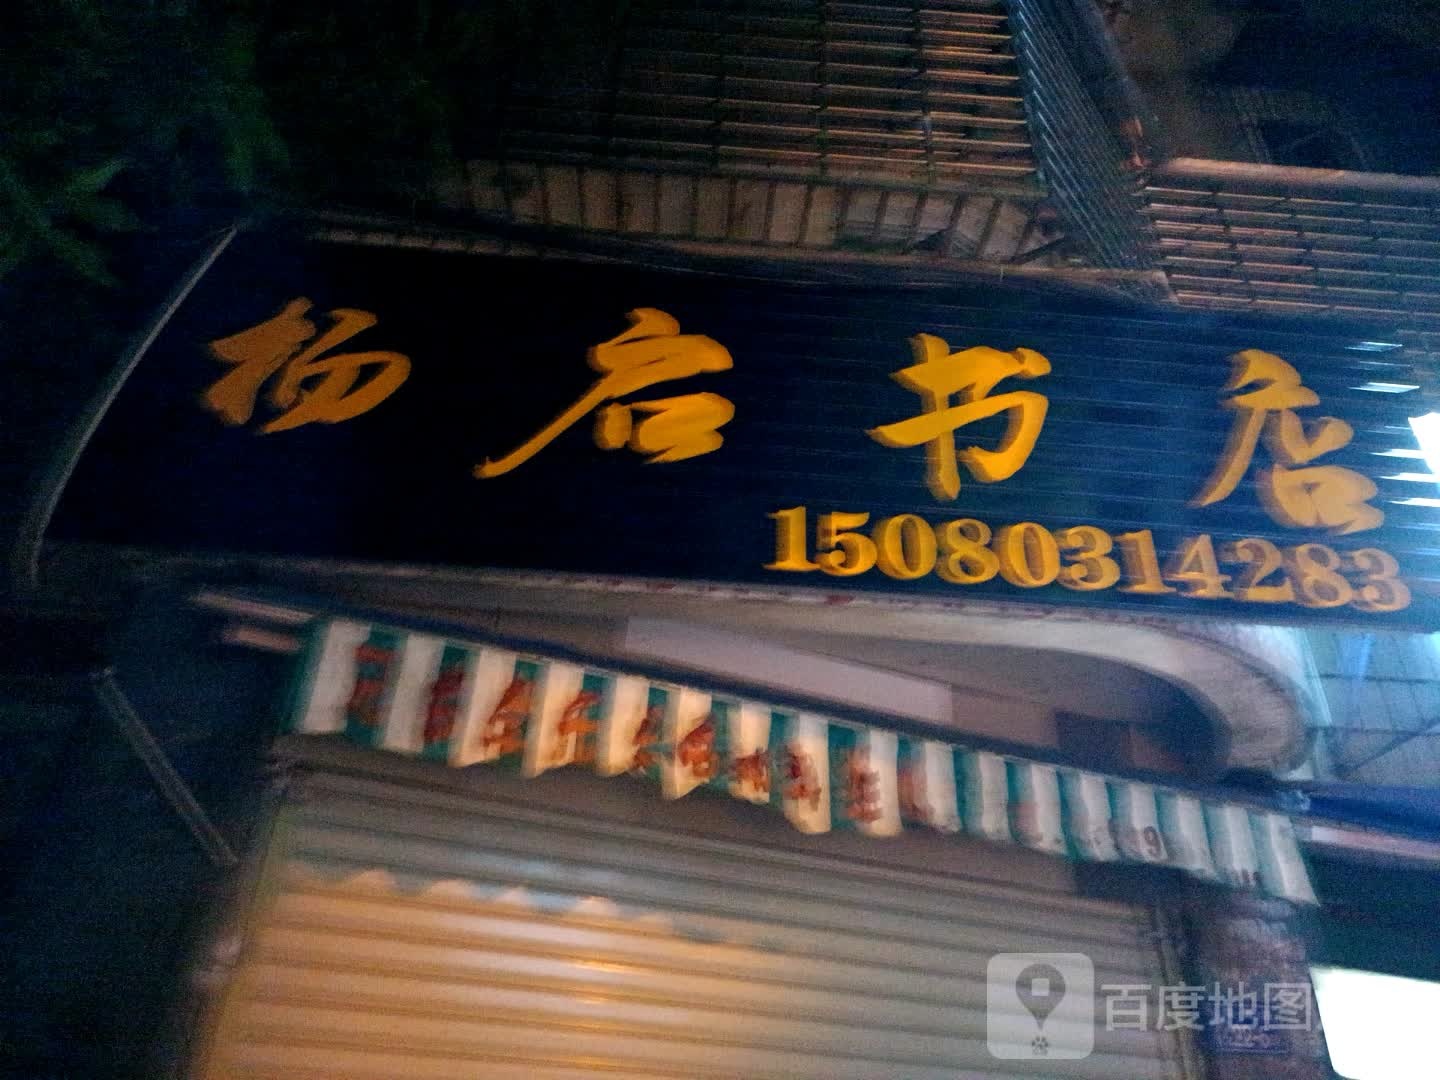 杨启书店